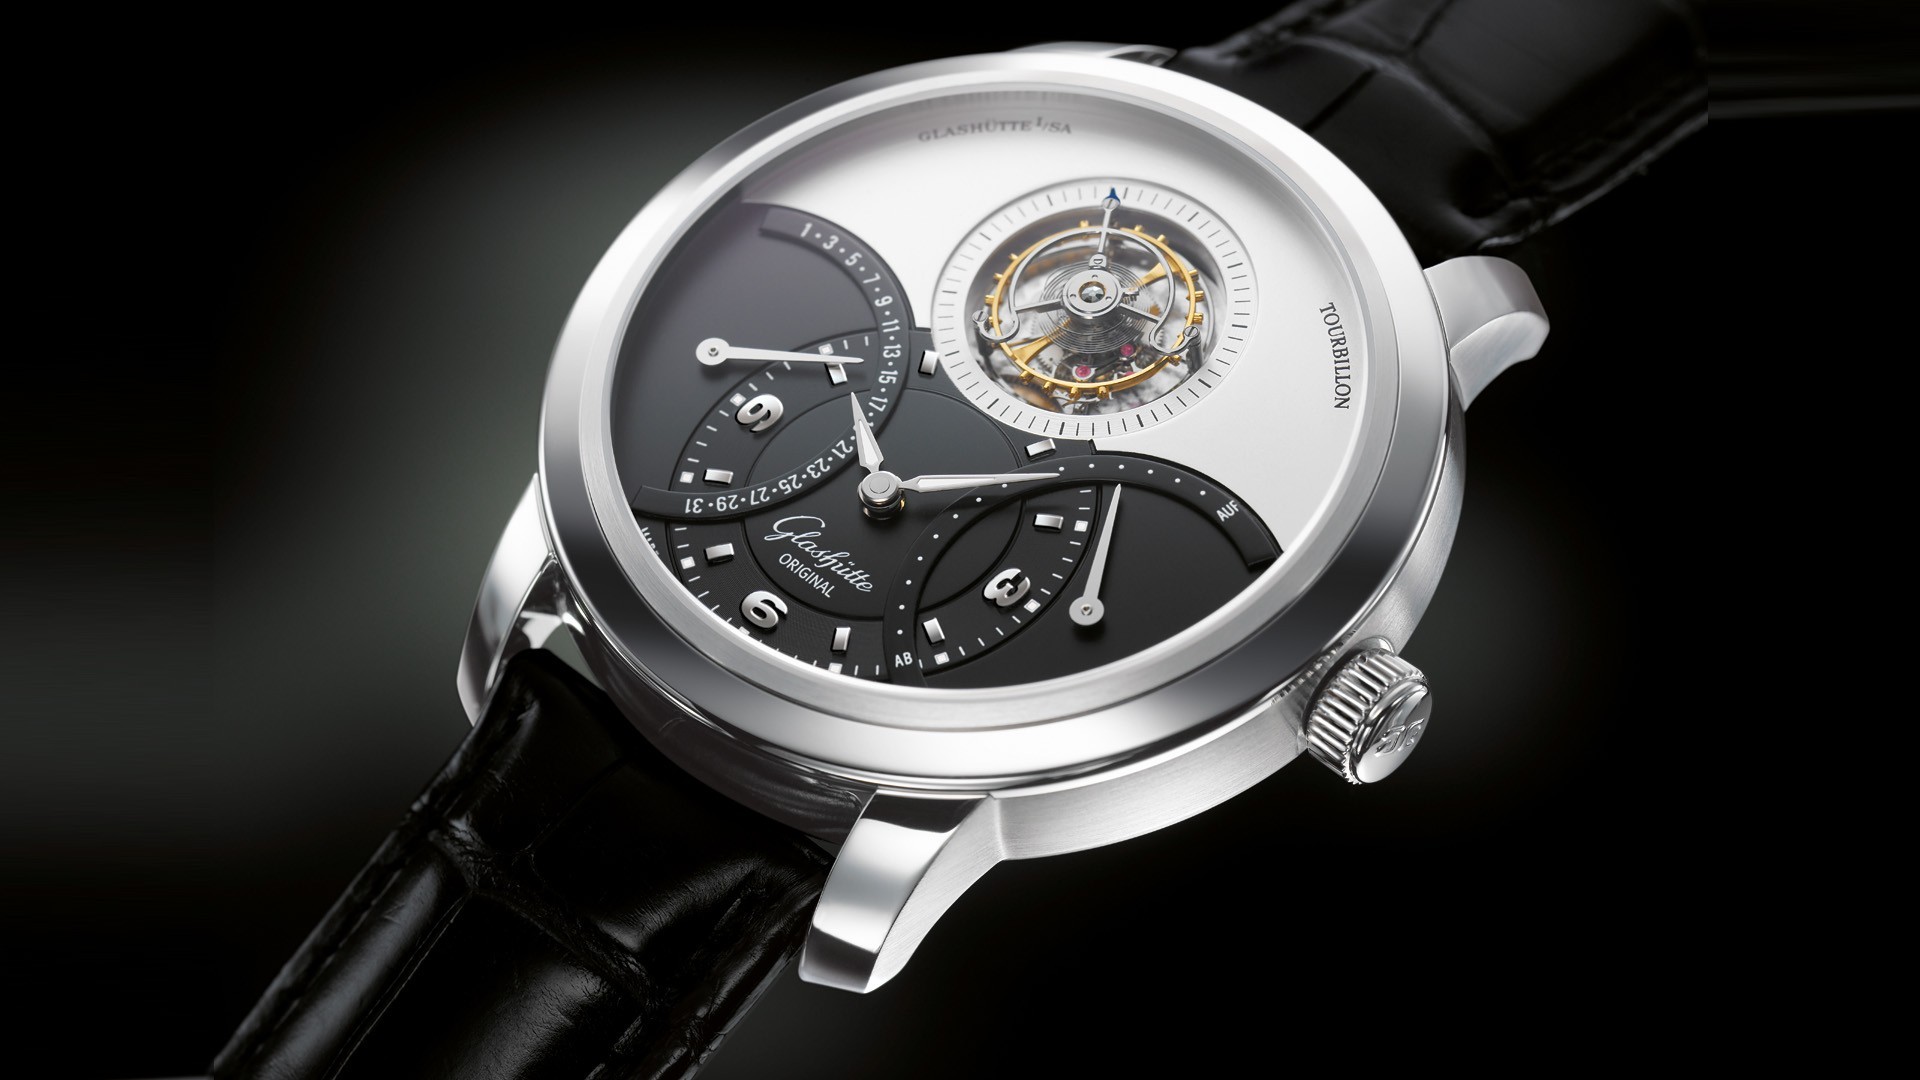 General 1920x1080 watch luxury watches Glashütte wristwatch closeup technology